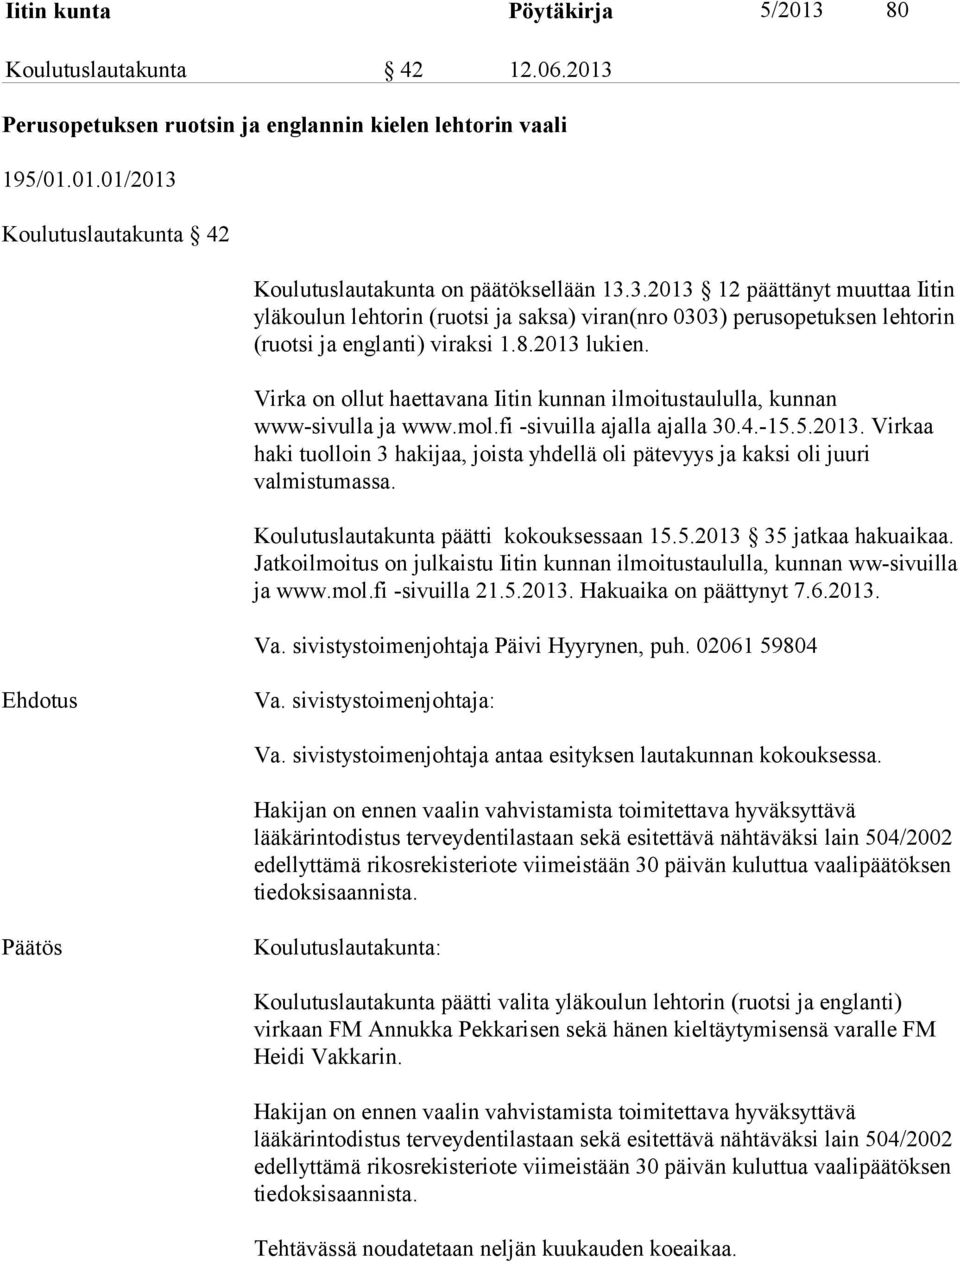 Virka on ollut haettavana Iitin kunnan ilmoitustaululla, kunnan www-sivulla ja www.mol.fi -sivuilla ajalla ajalla 30.4.-15.5.2013.